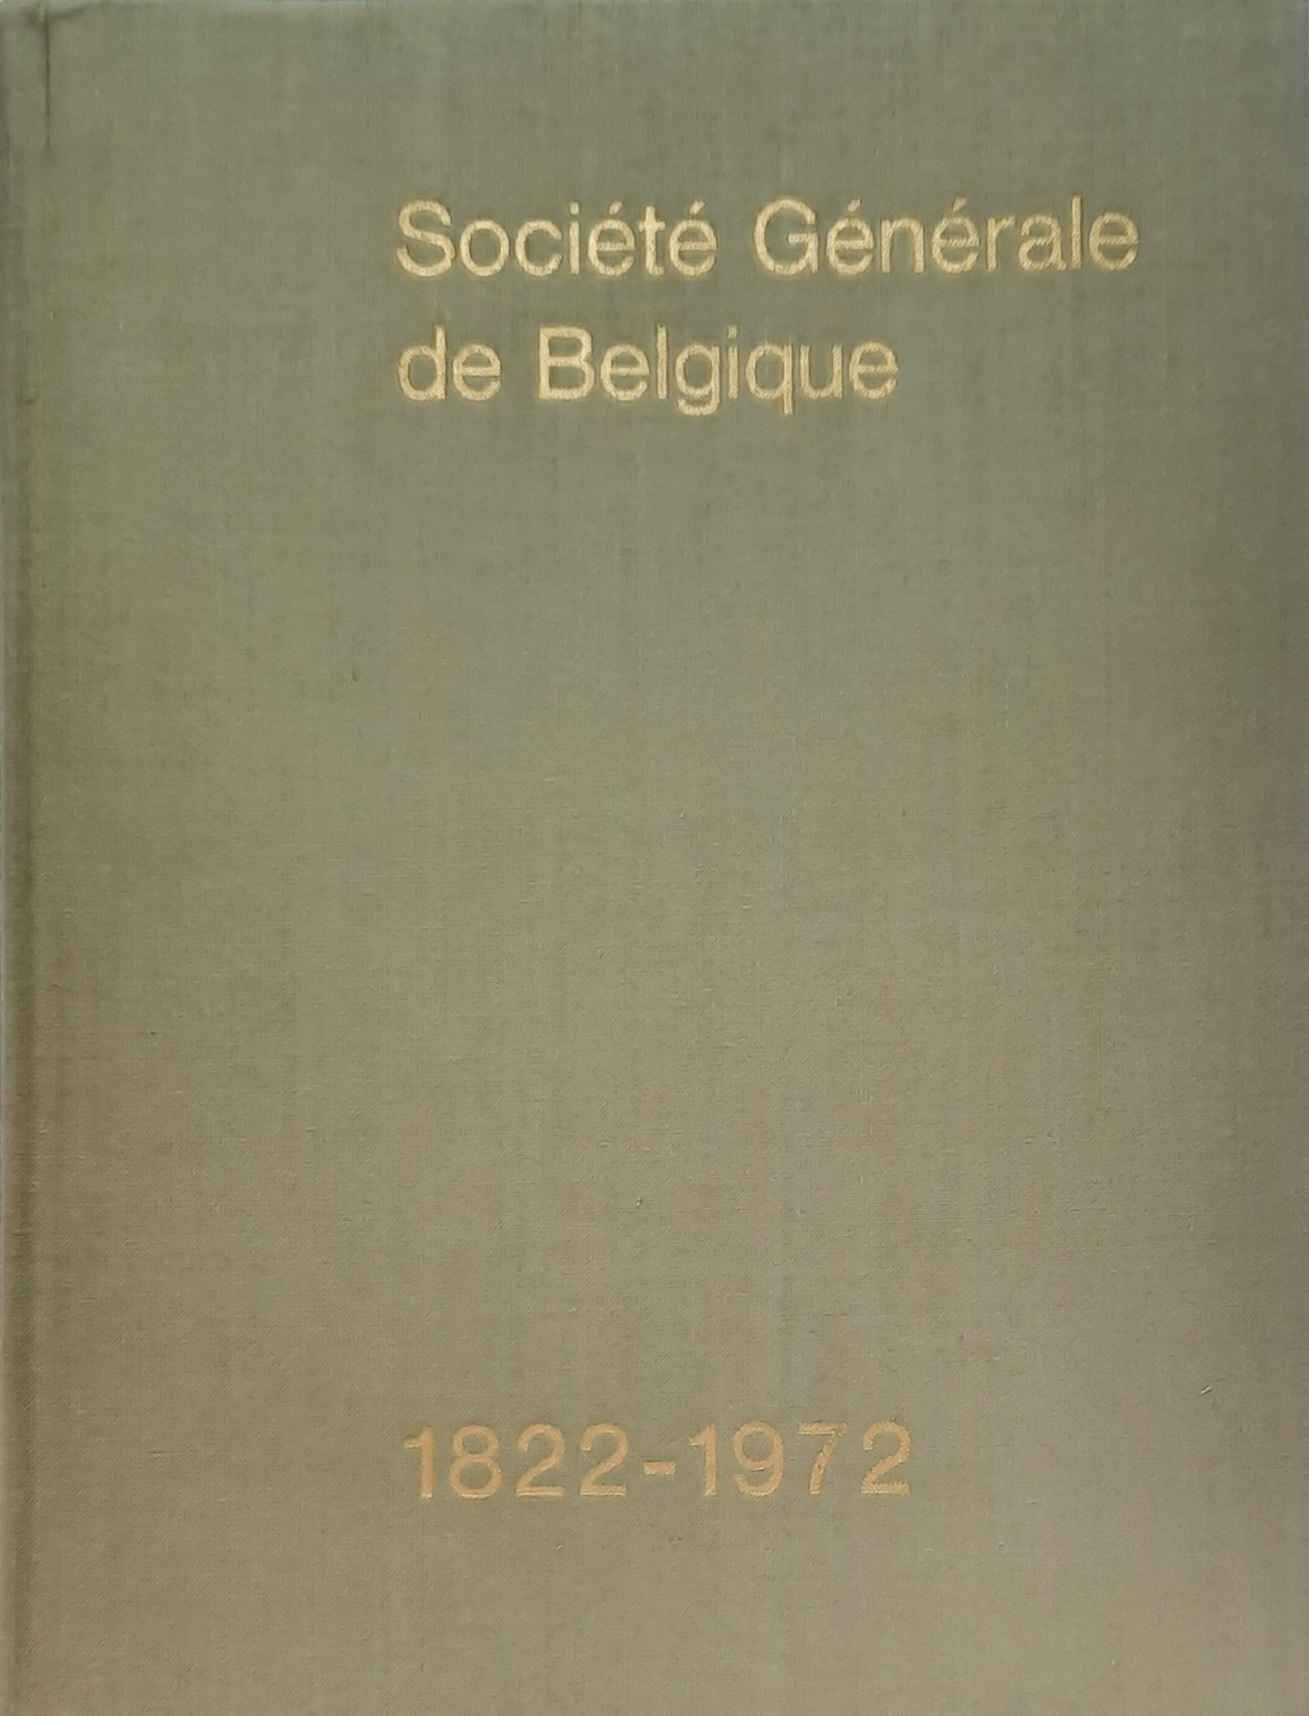 Book cover 19720098: BOLLE Jacques (redactie), NOKIN Max (inleiding) | Société Générale de Belgique 1822-1972 [Nederlandstalige uitgave]